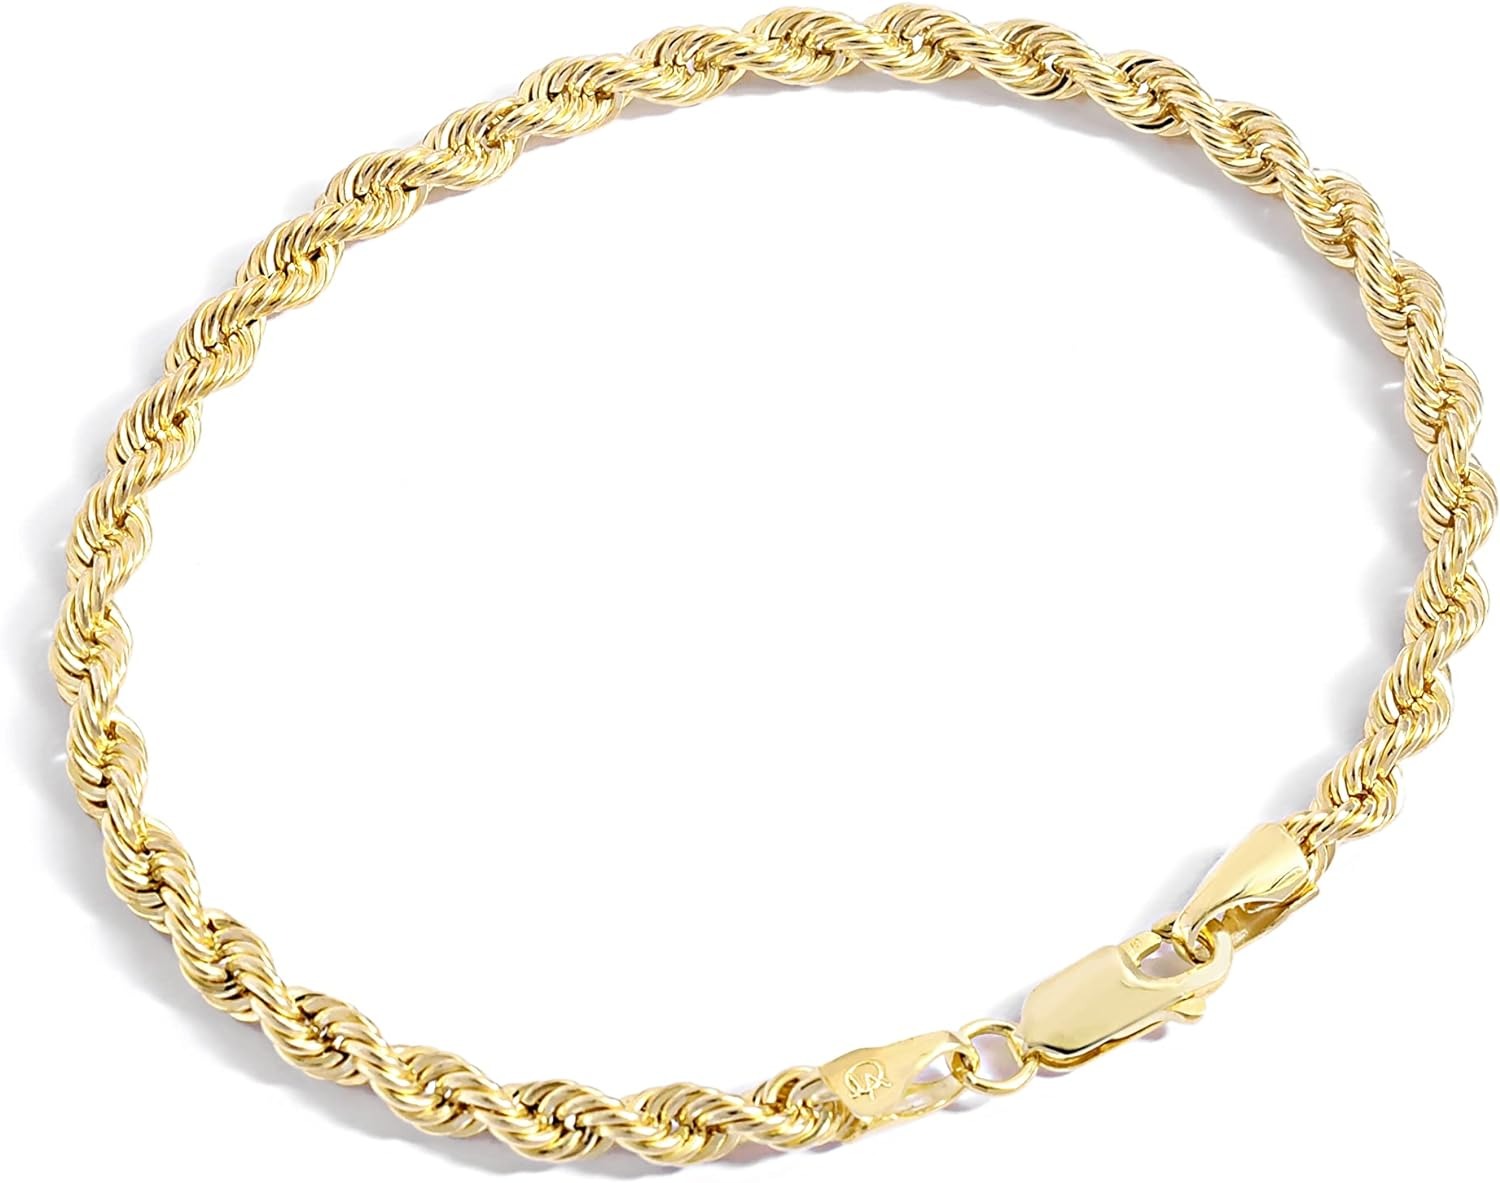 Bộ sưu tập vòng tay dây chuyền lấp đầy vàng Atelier - Vòng tay chuỗi dây lấp đầy vàng vàng 14K dành cho phụ nữ và nam giới với các kích cỡ khác nhau (2.7mm, 3.8mm)